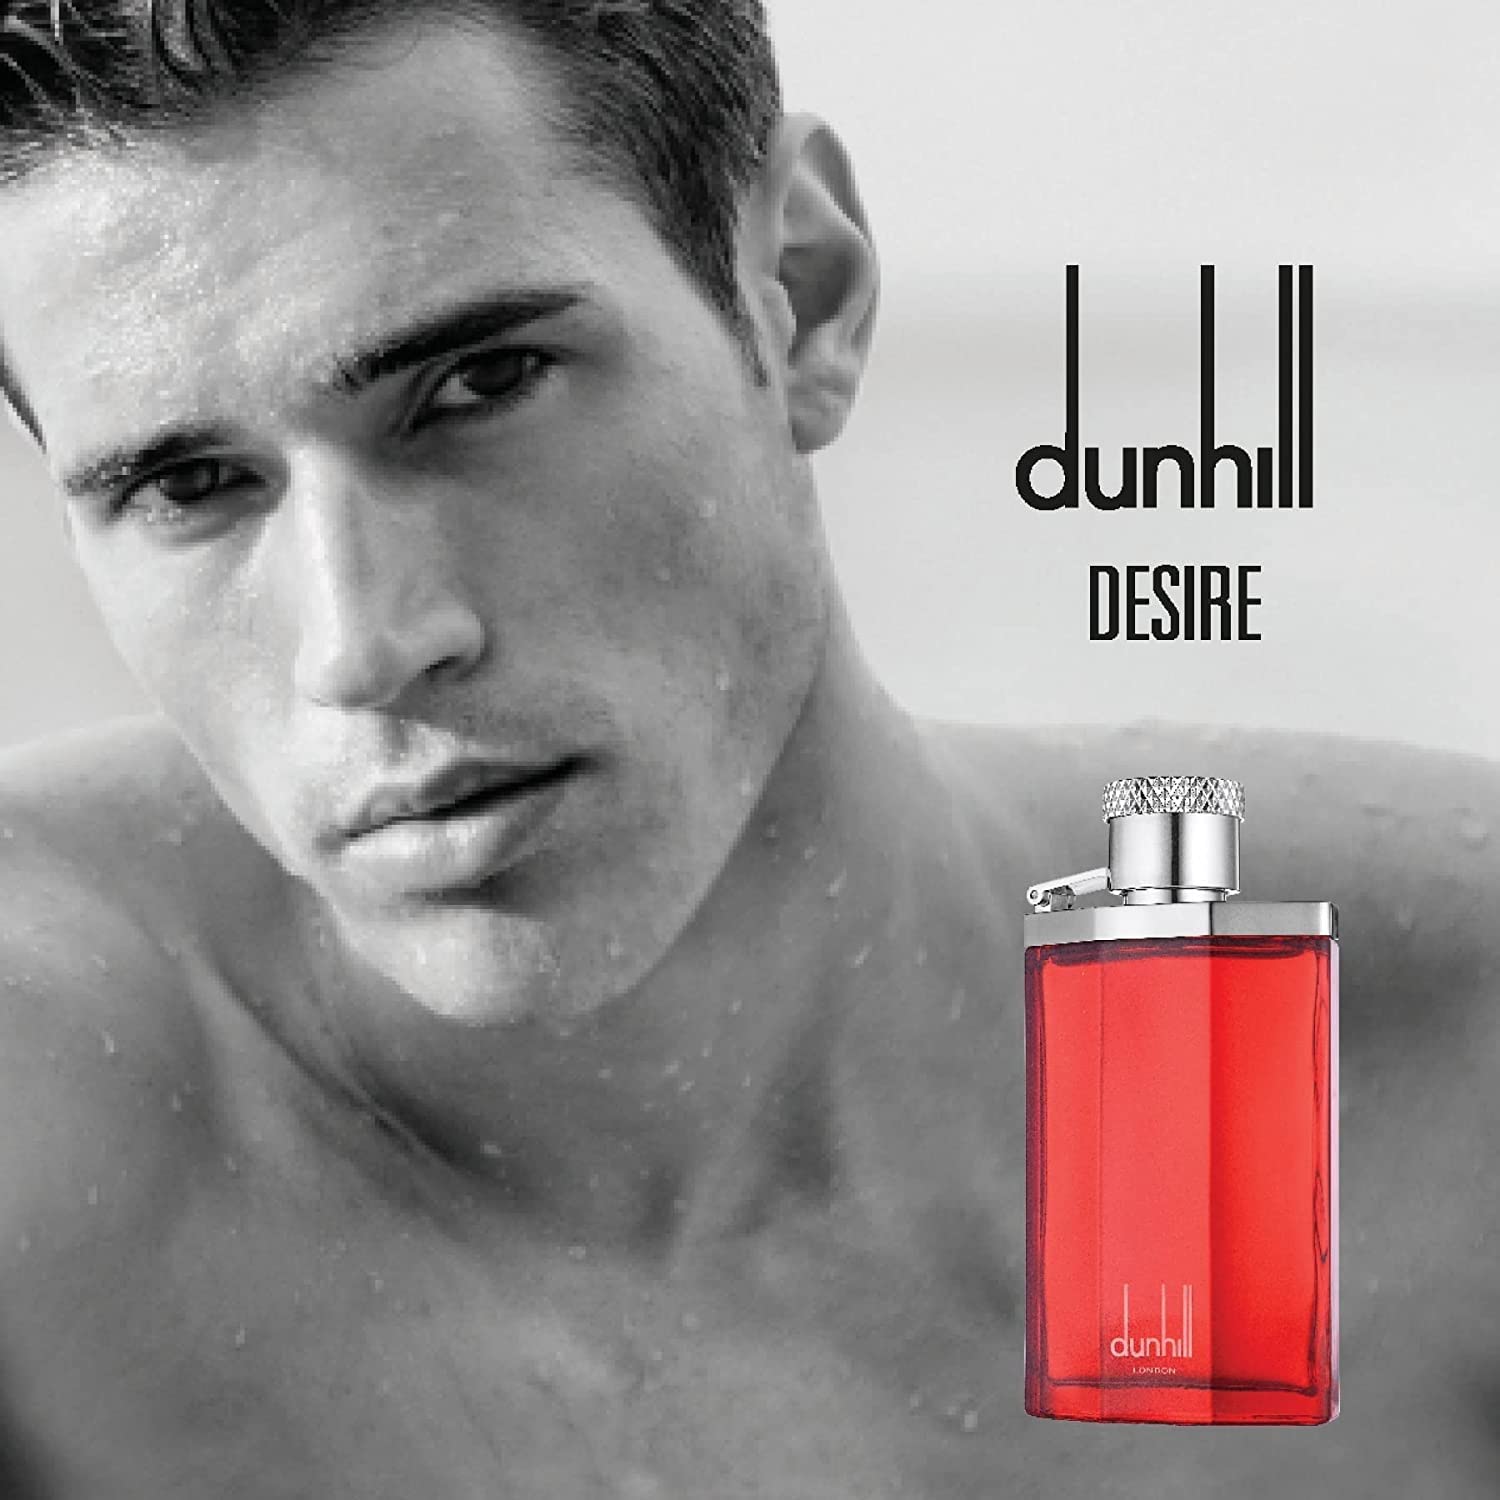 Dunhill Desire Red Eau de Toilette Cologne Spray For Men